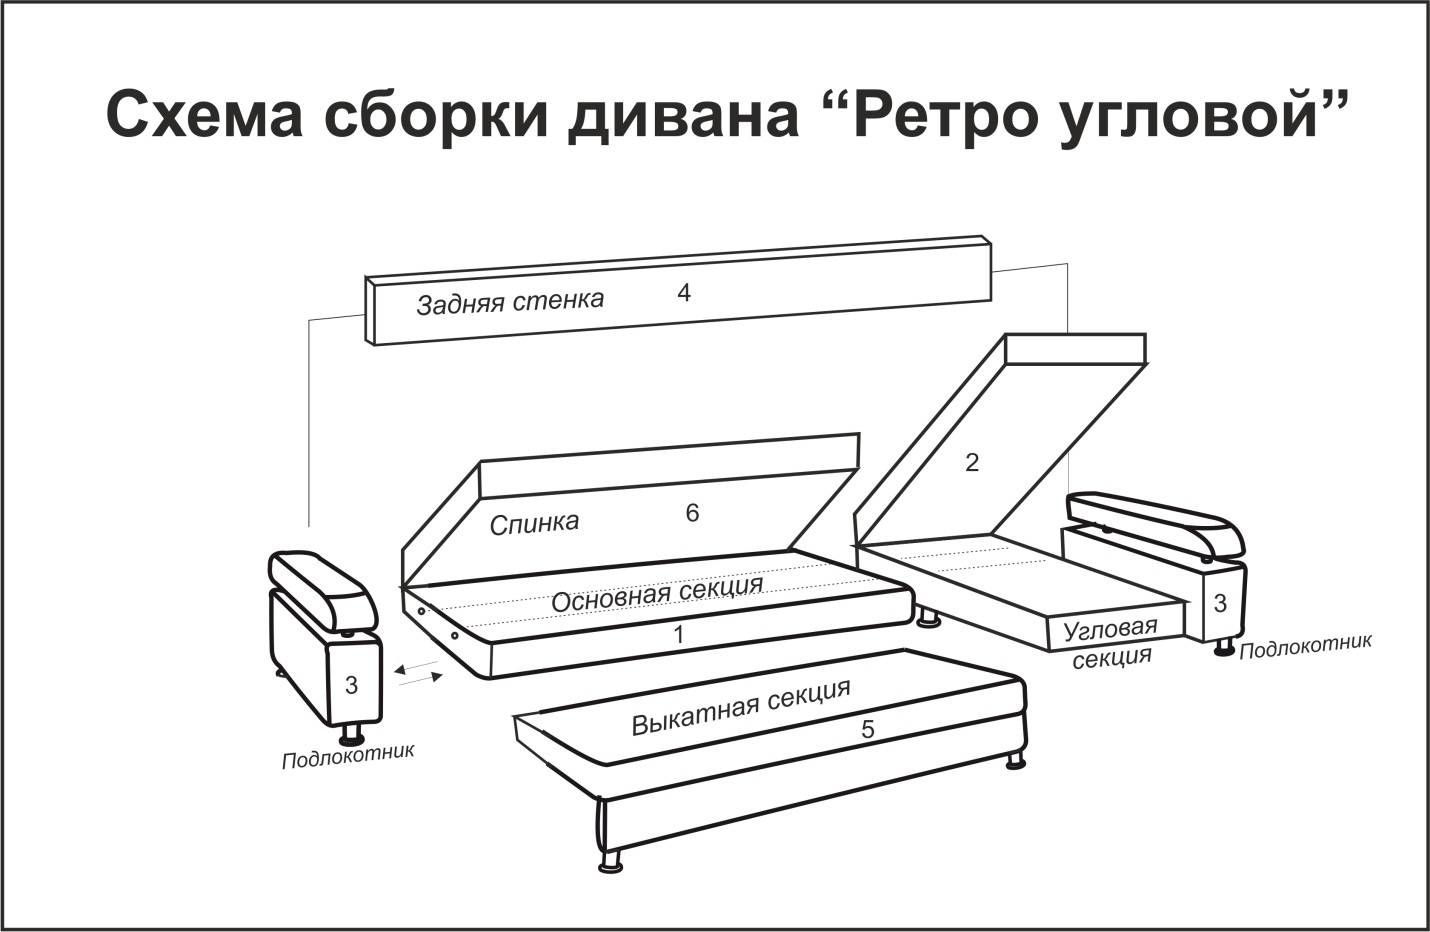 Сборка дивана своими руками: пошаговая инструкция с подробным описанием всех этапов